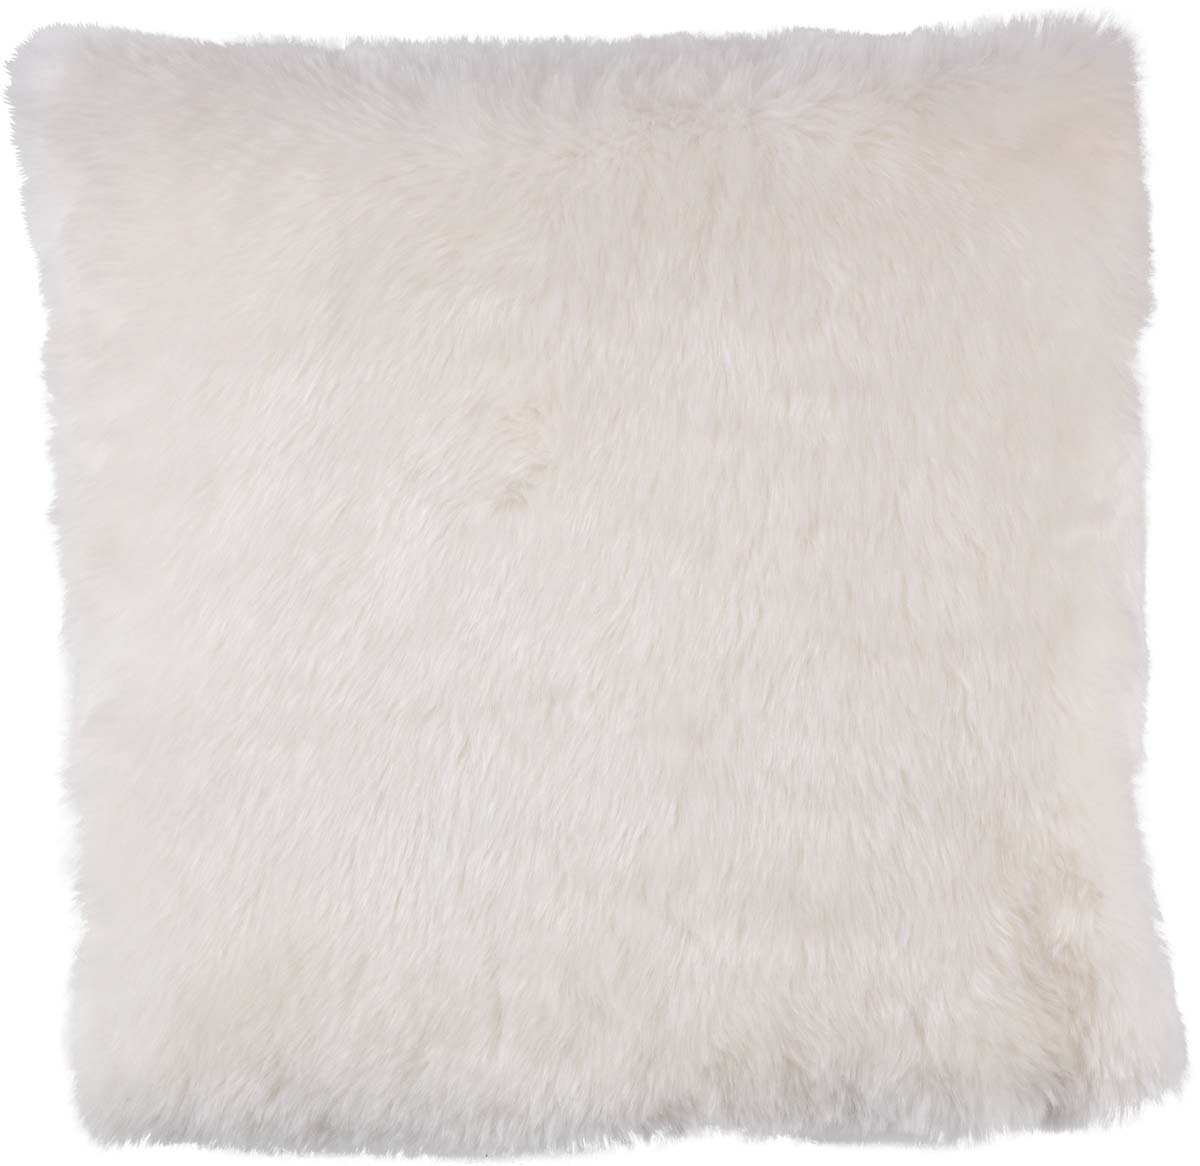 ELLY - Sierkussen fluffy en superzacht ivoor 45x45 cm - wit